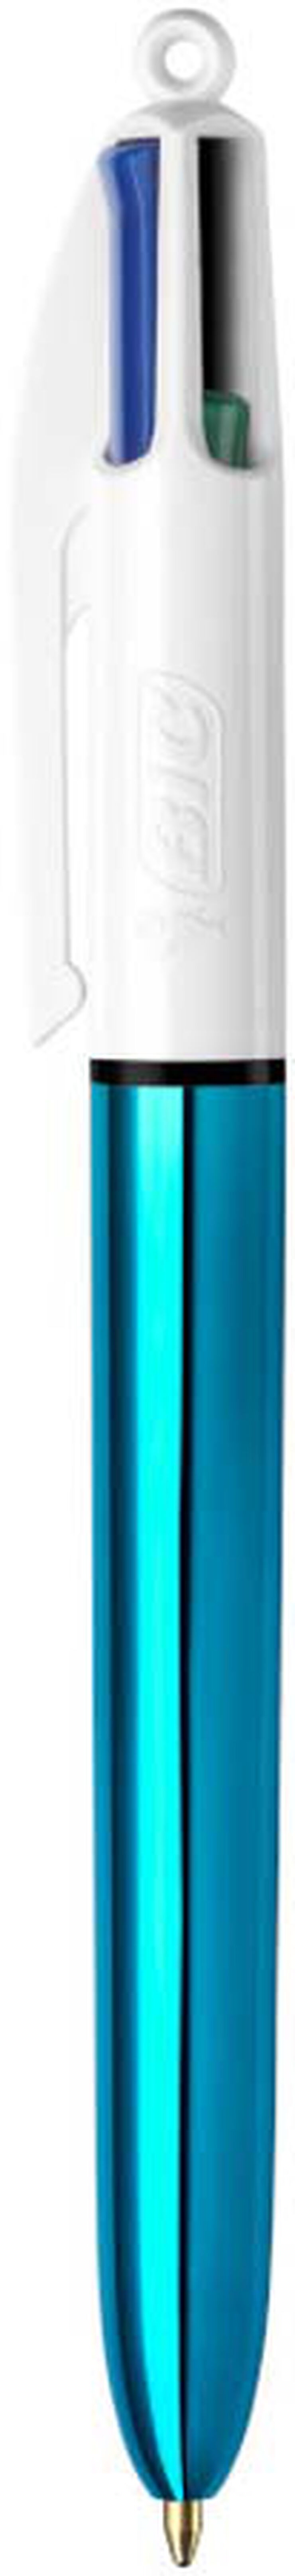 Bolígrafo Bic 4 Colores Shine Azul